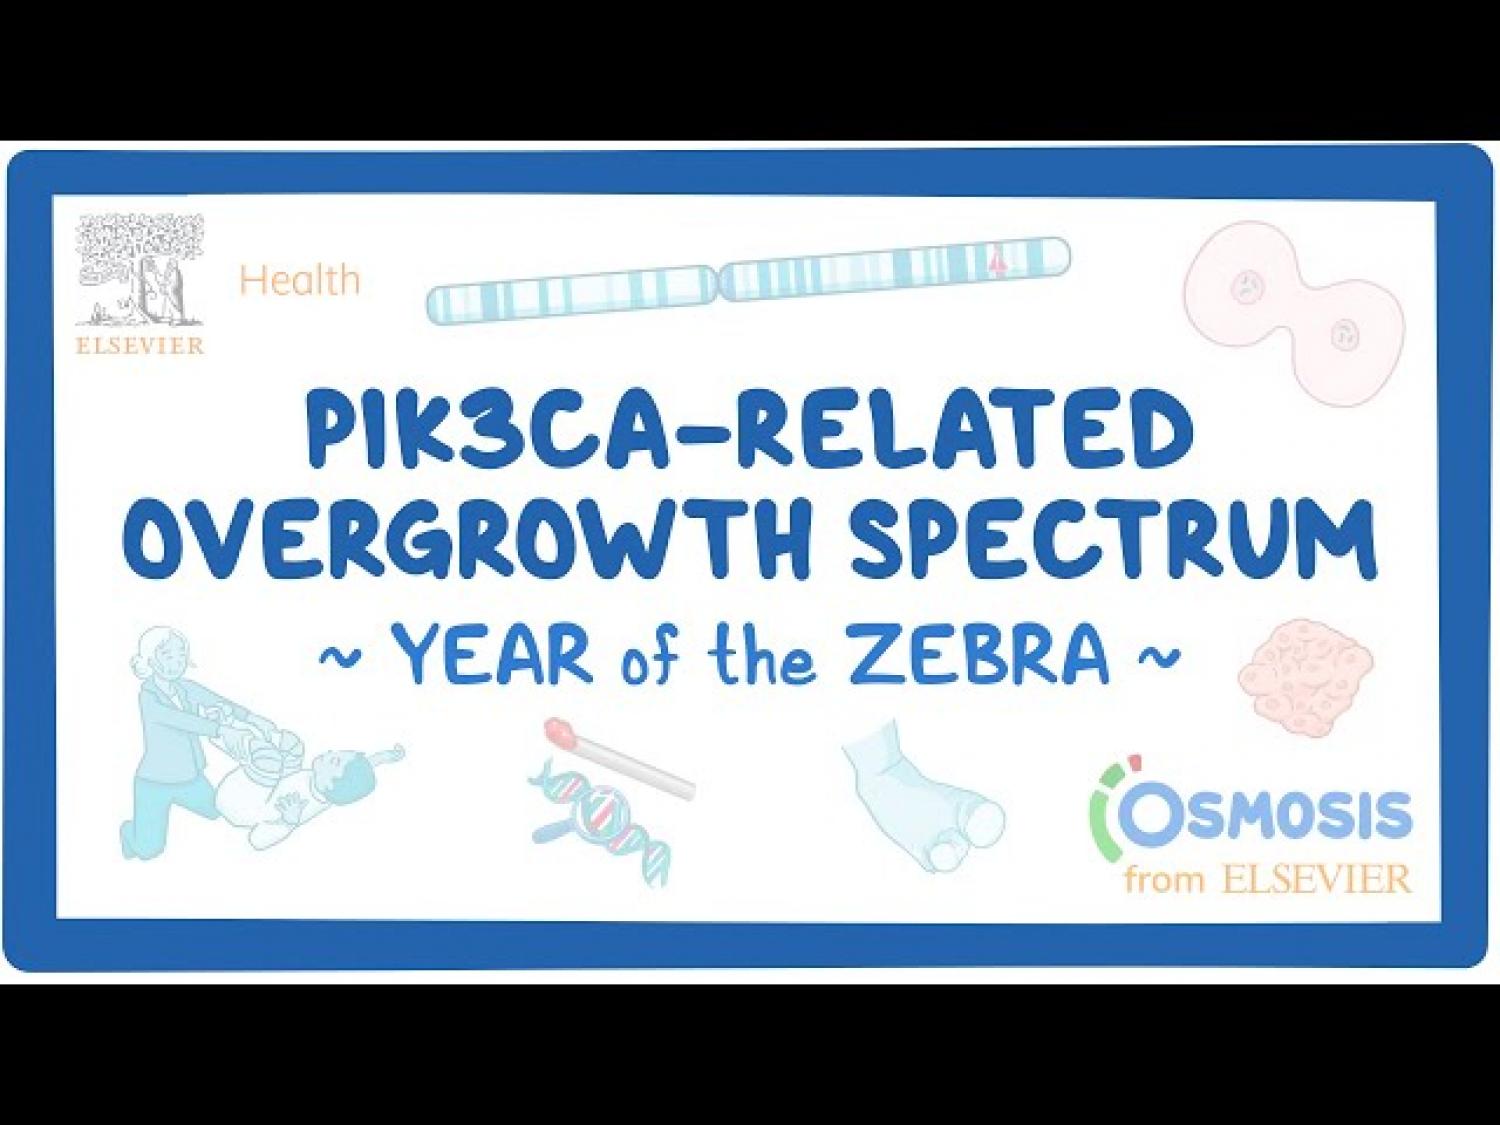 PIK3CA-related overgrowth spectrum.